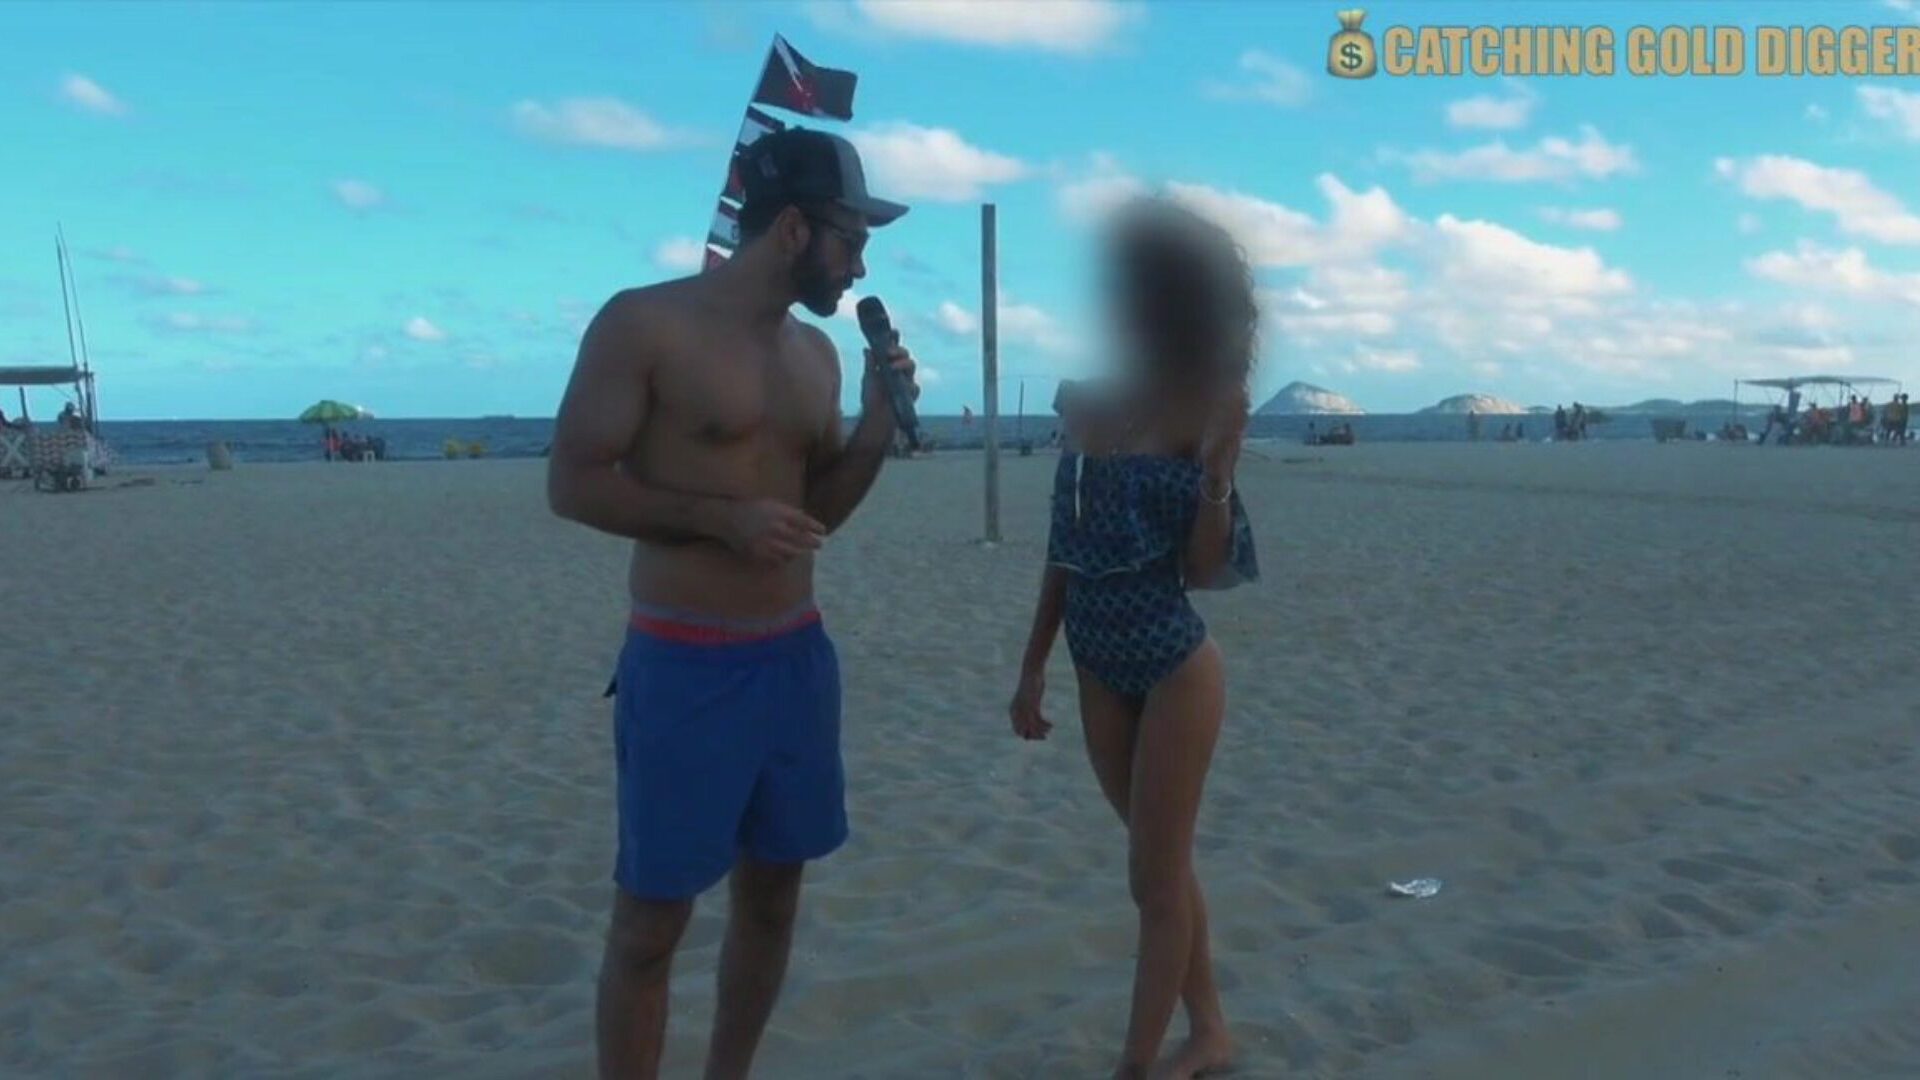 κοκαλιάρικο έφηβος της Βραζιλίας πατήθηκε μετά από συνέντευξη στην παραλία